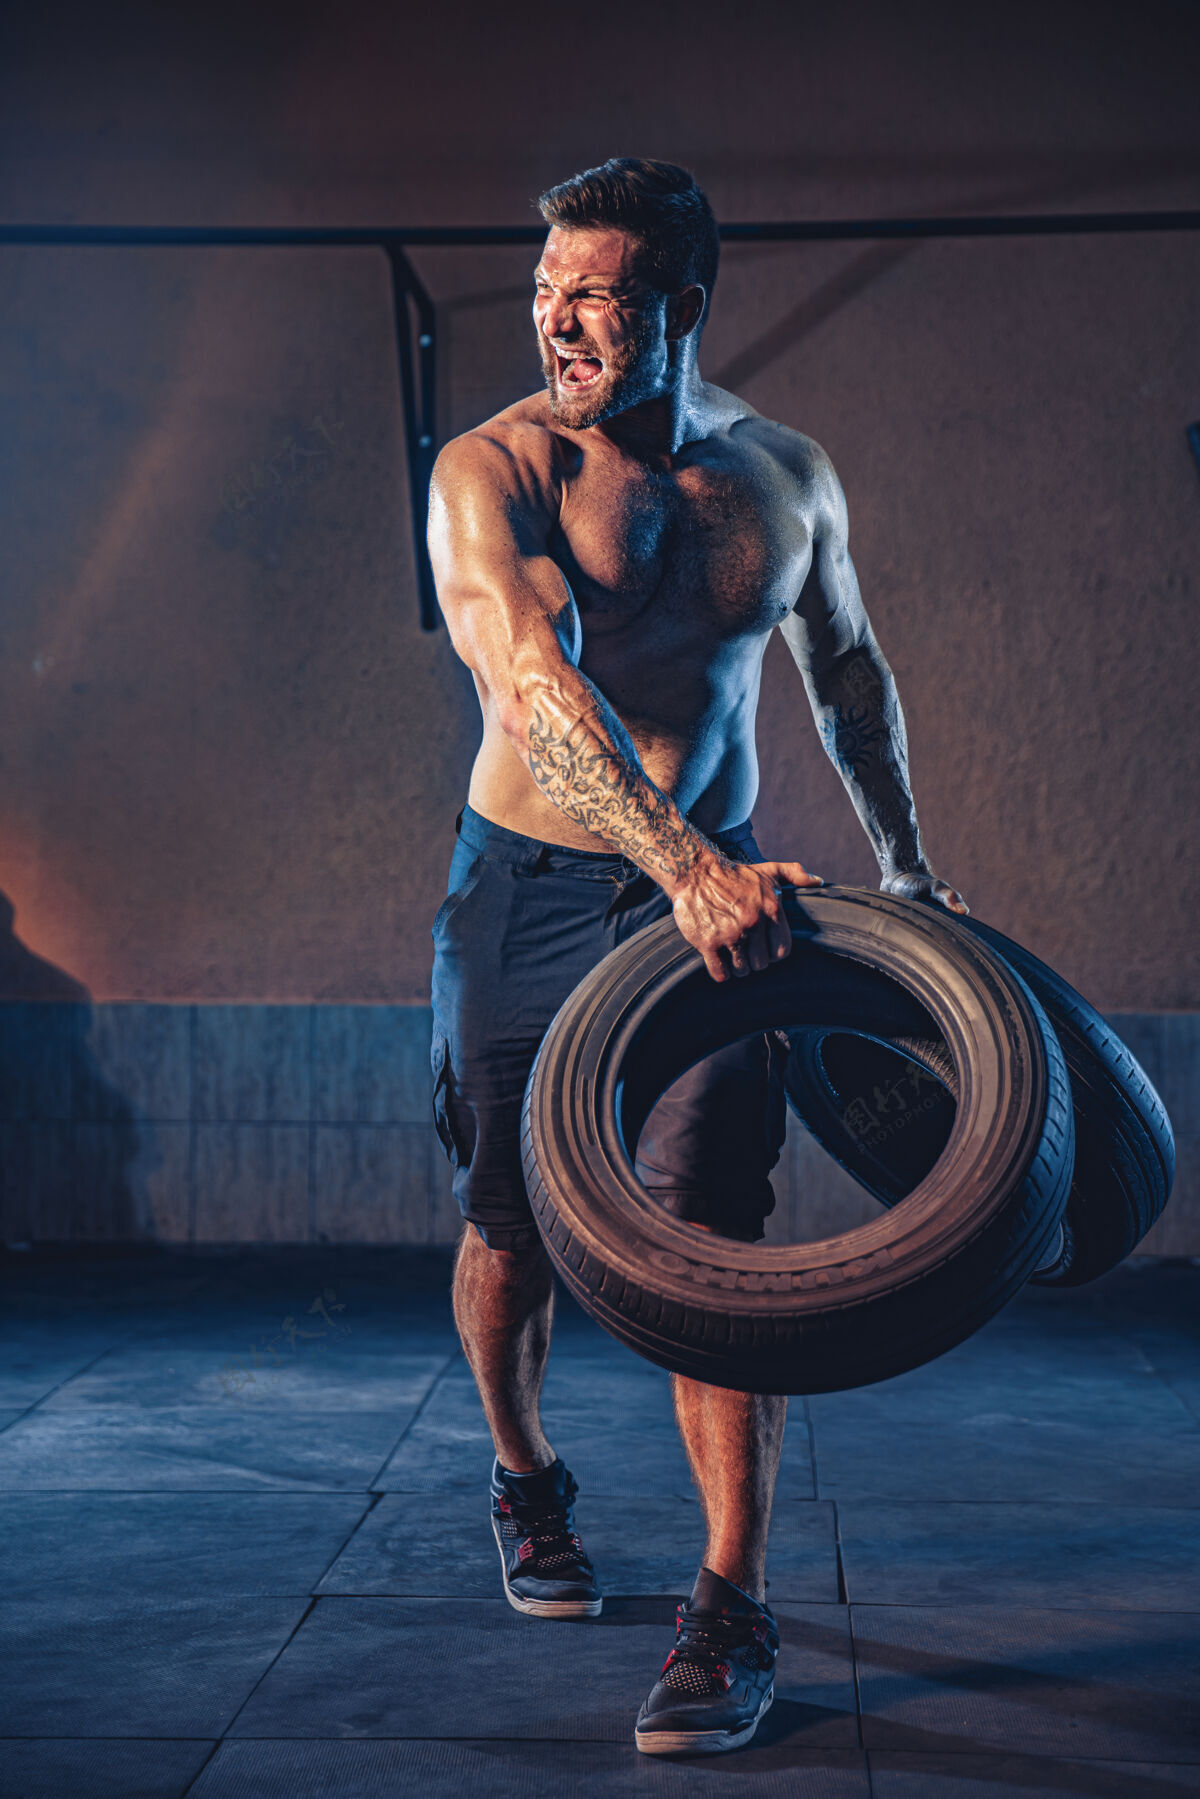 翻转健美训练 大胡子强壮的运动员 肌肉发达的身体举起沉重的轮子在健身房健身年轻身材